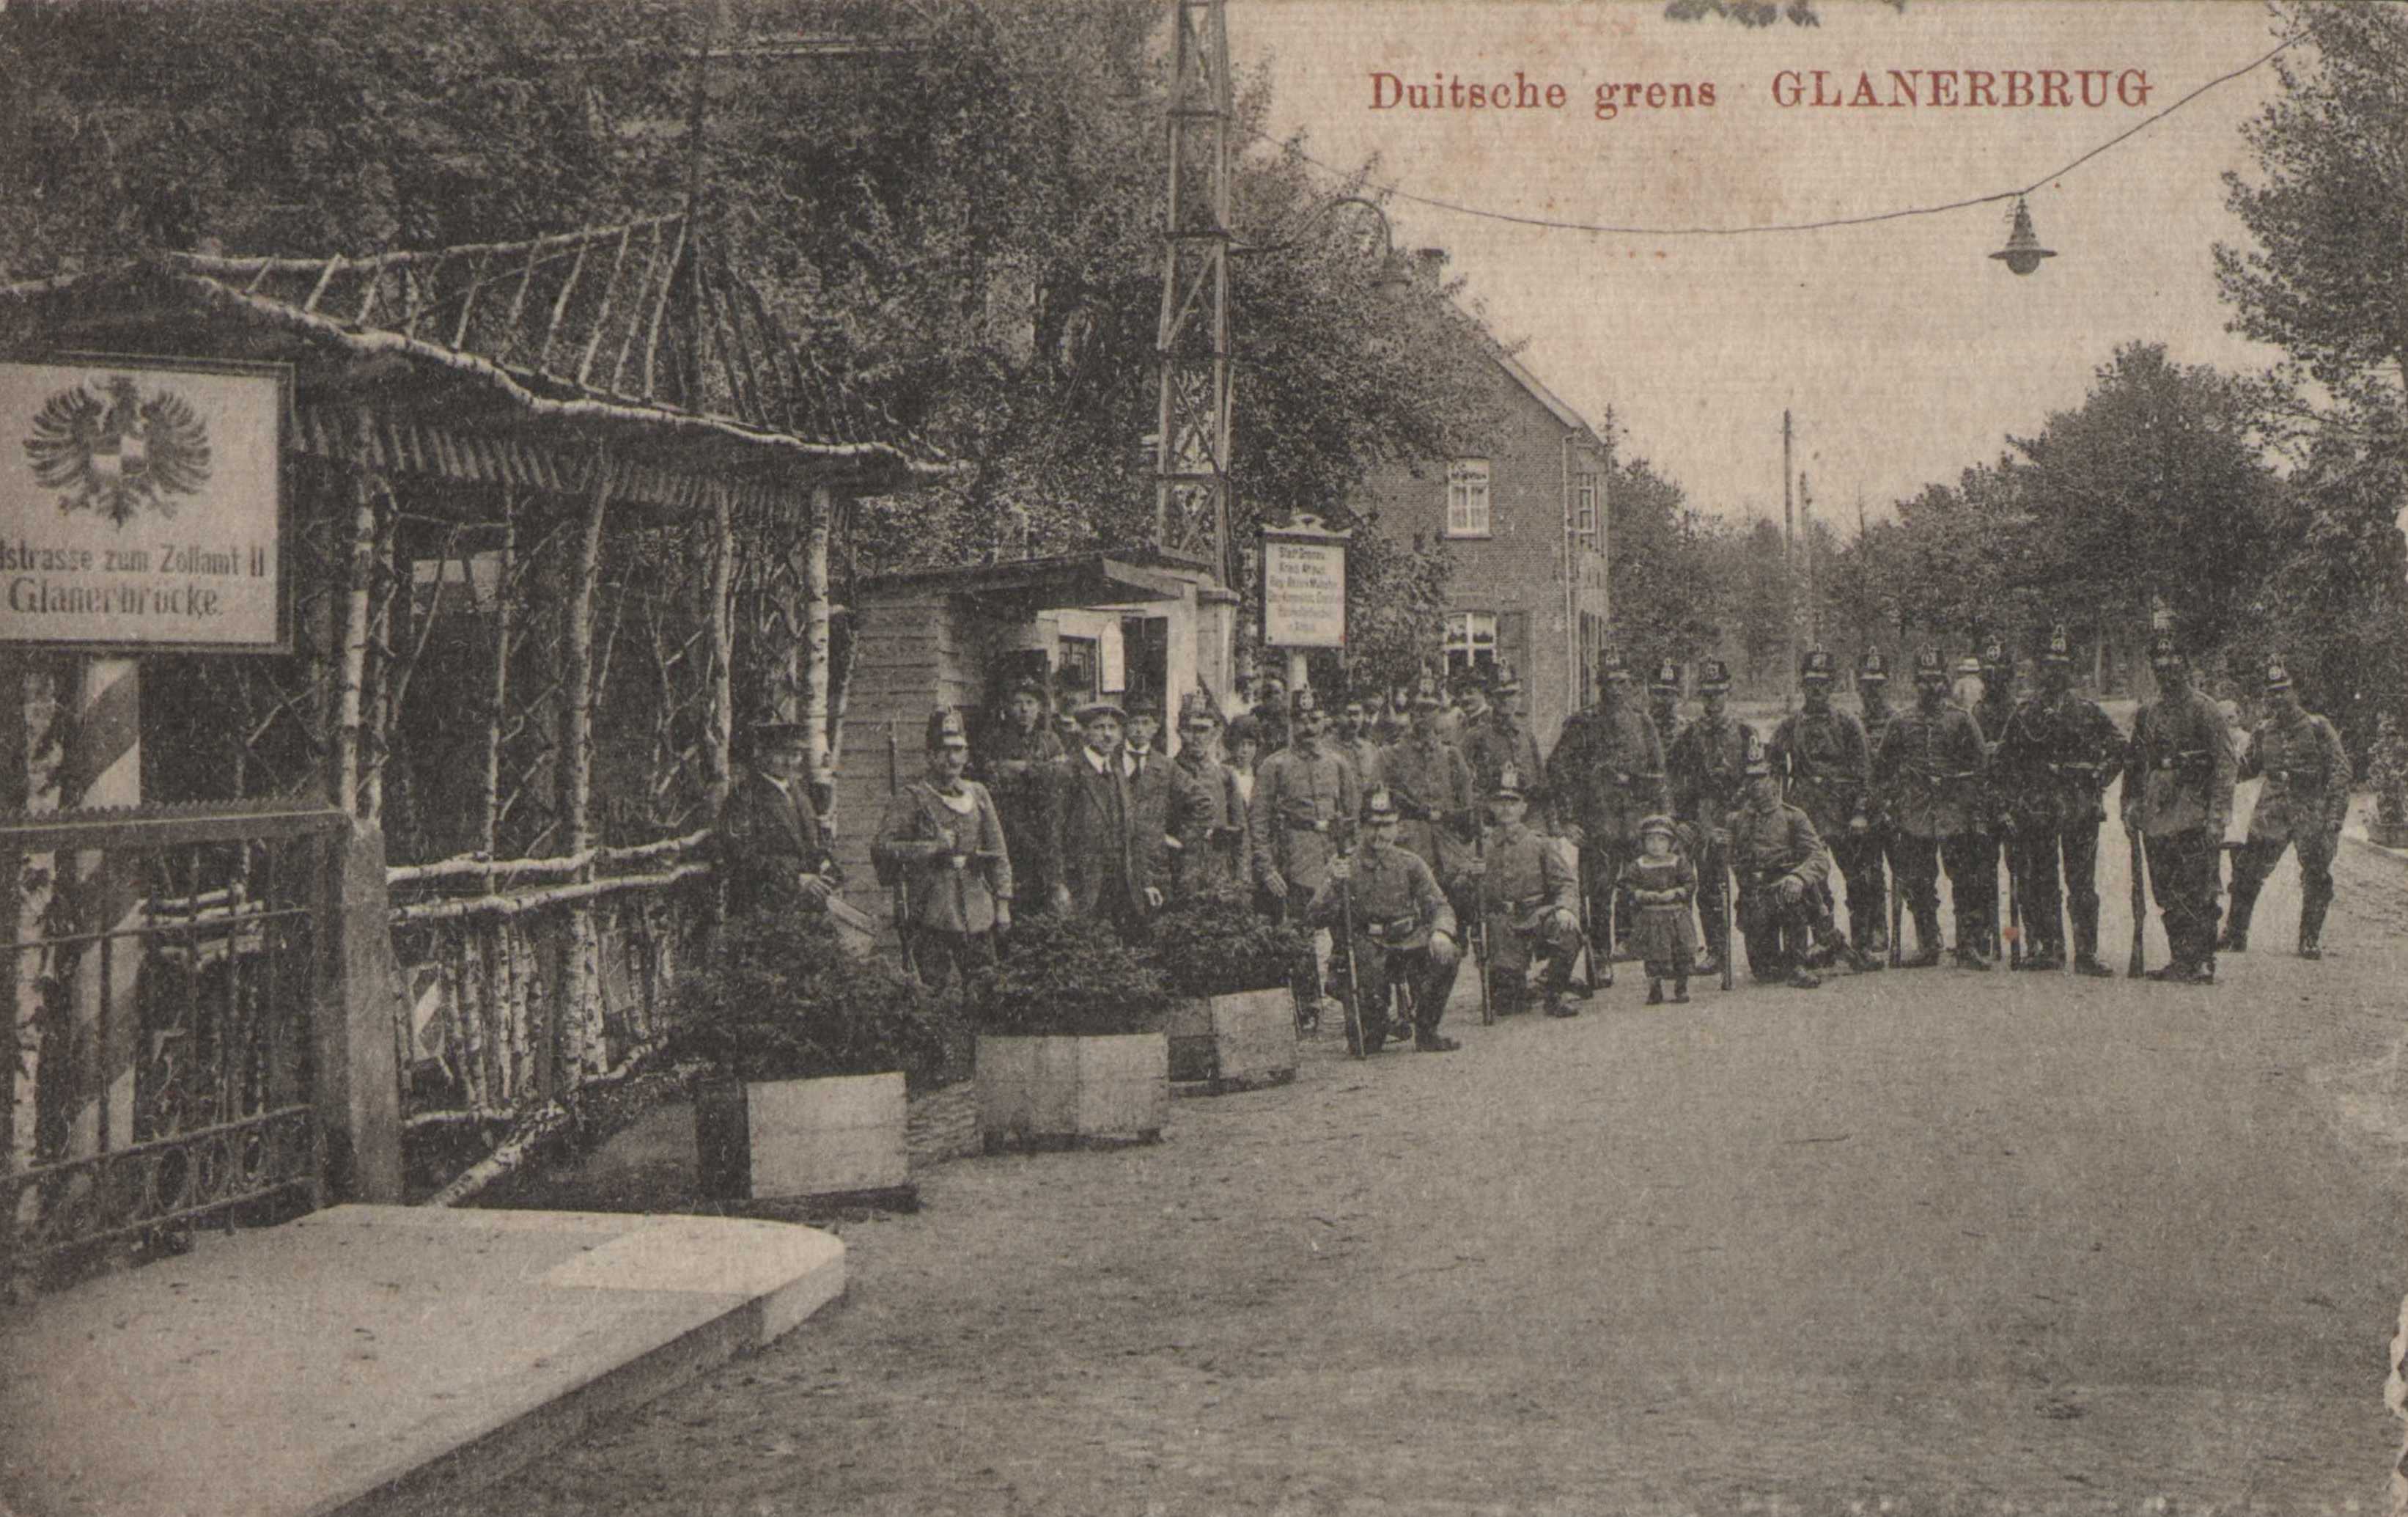 Glanerbrug-Grens-1914.jpg